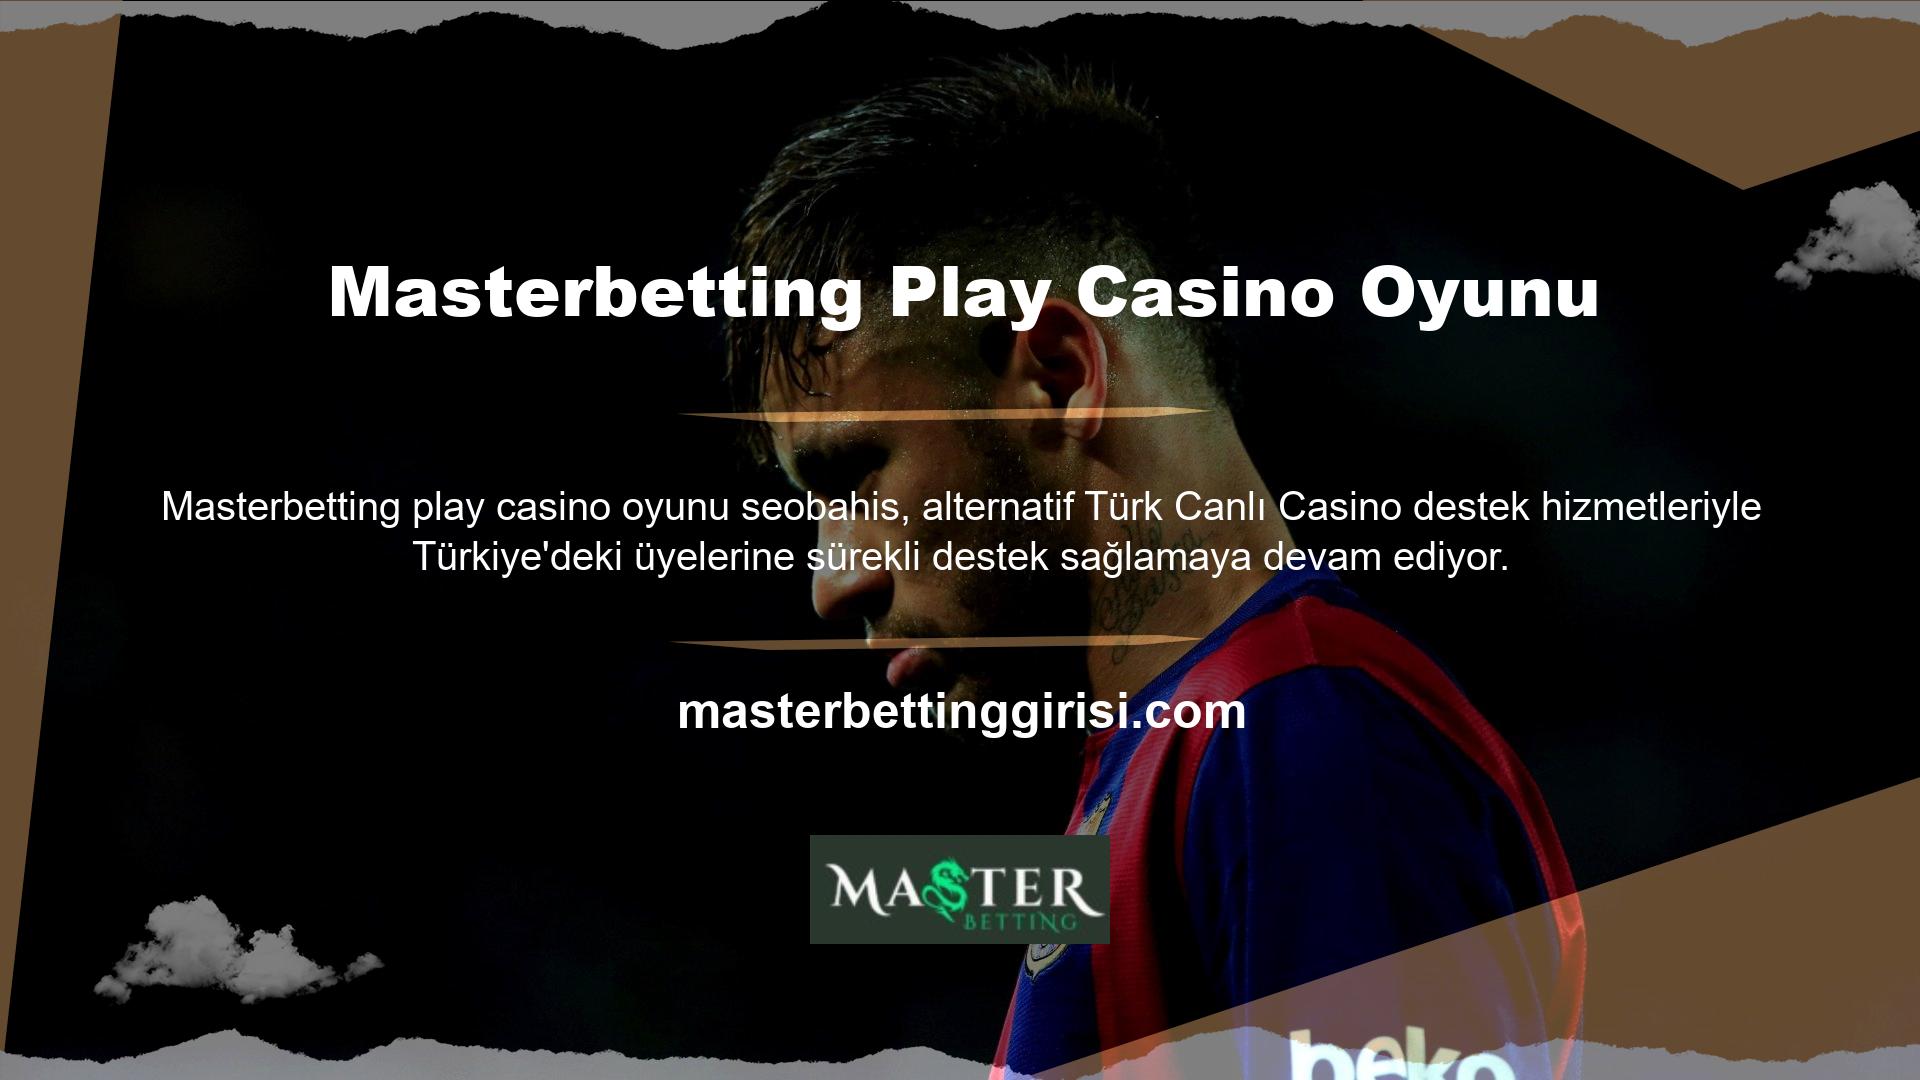 Masterbetting casino sitesi en iyi casino oyunlarını seçmenize yardımcı olmak için tüm destek hizmetlerini Türkçe olarak sunsa da üyelerimizin çeşitli sorunlarına çözüm bulmak neredeyse imkânsızdır